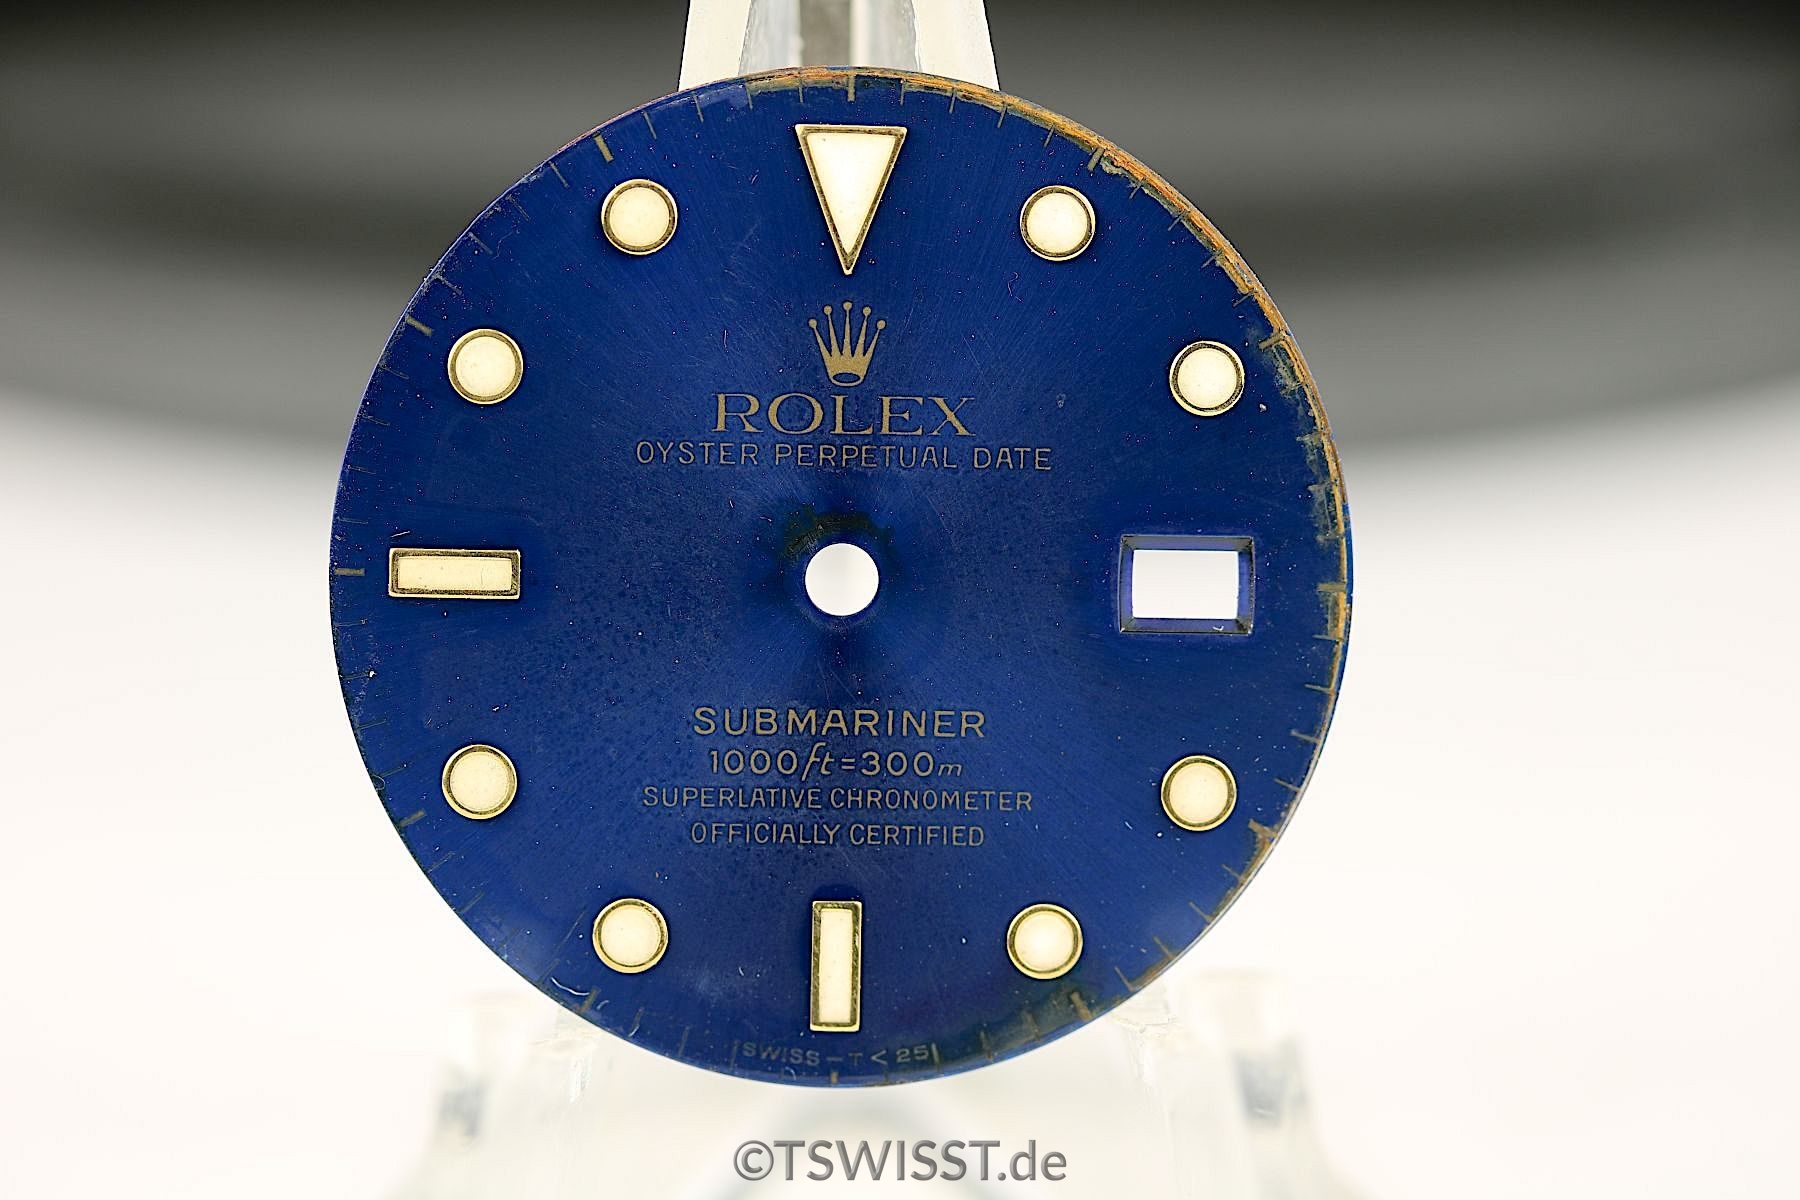 Rolex Submariner 16613/16618 dial